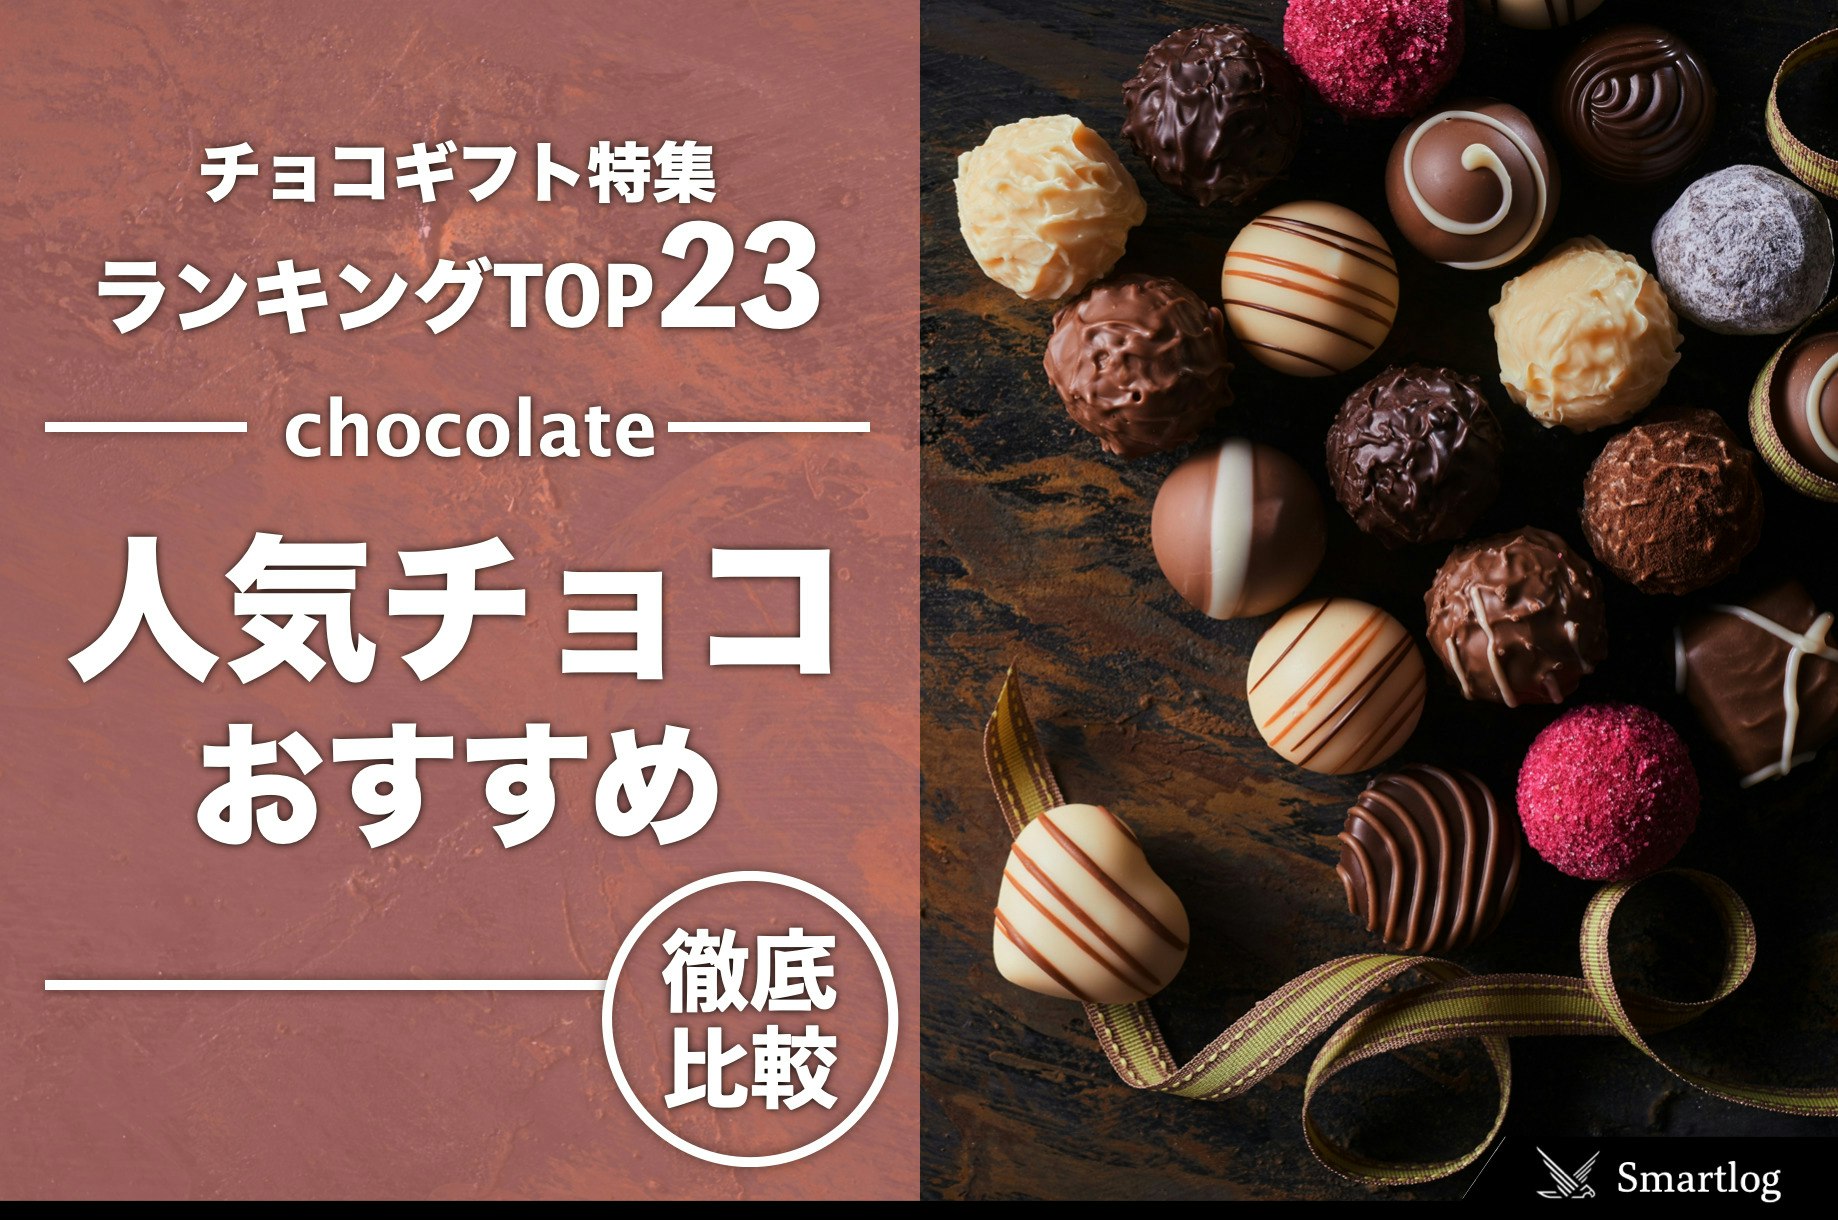 チョコレートギフト特集。女性にプレゼントしたい人気チョコ22個 | Smartlog